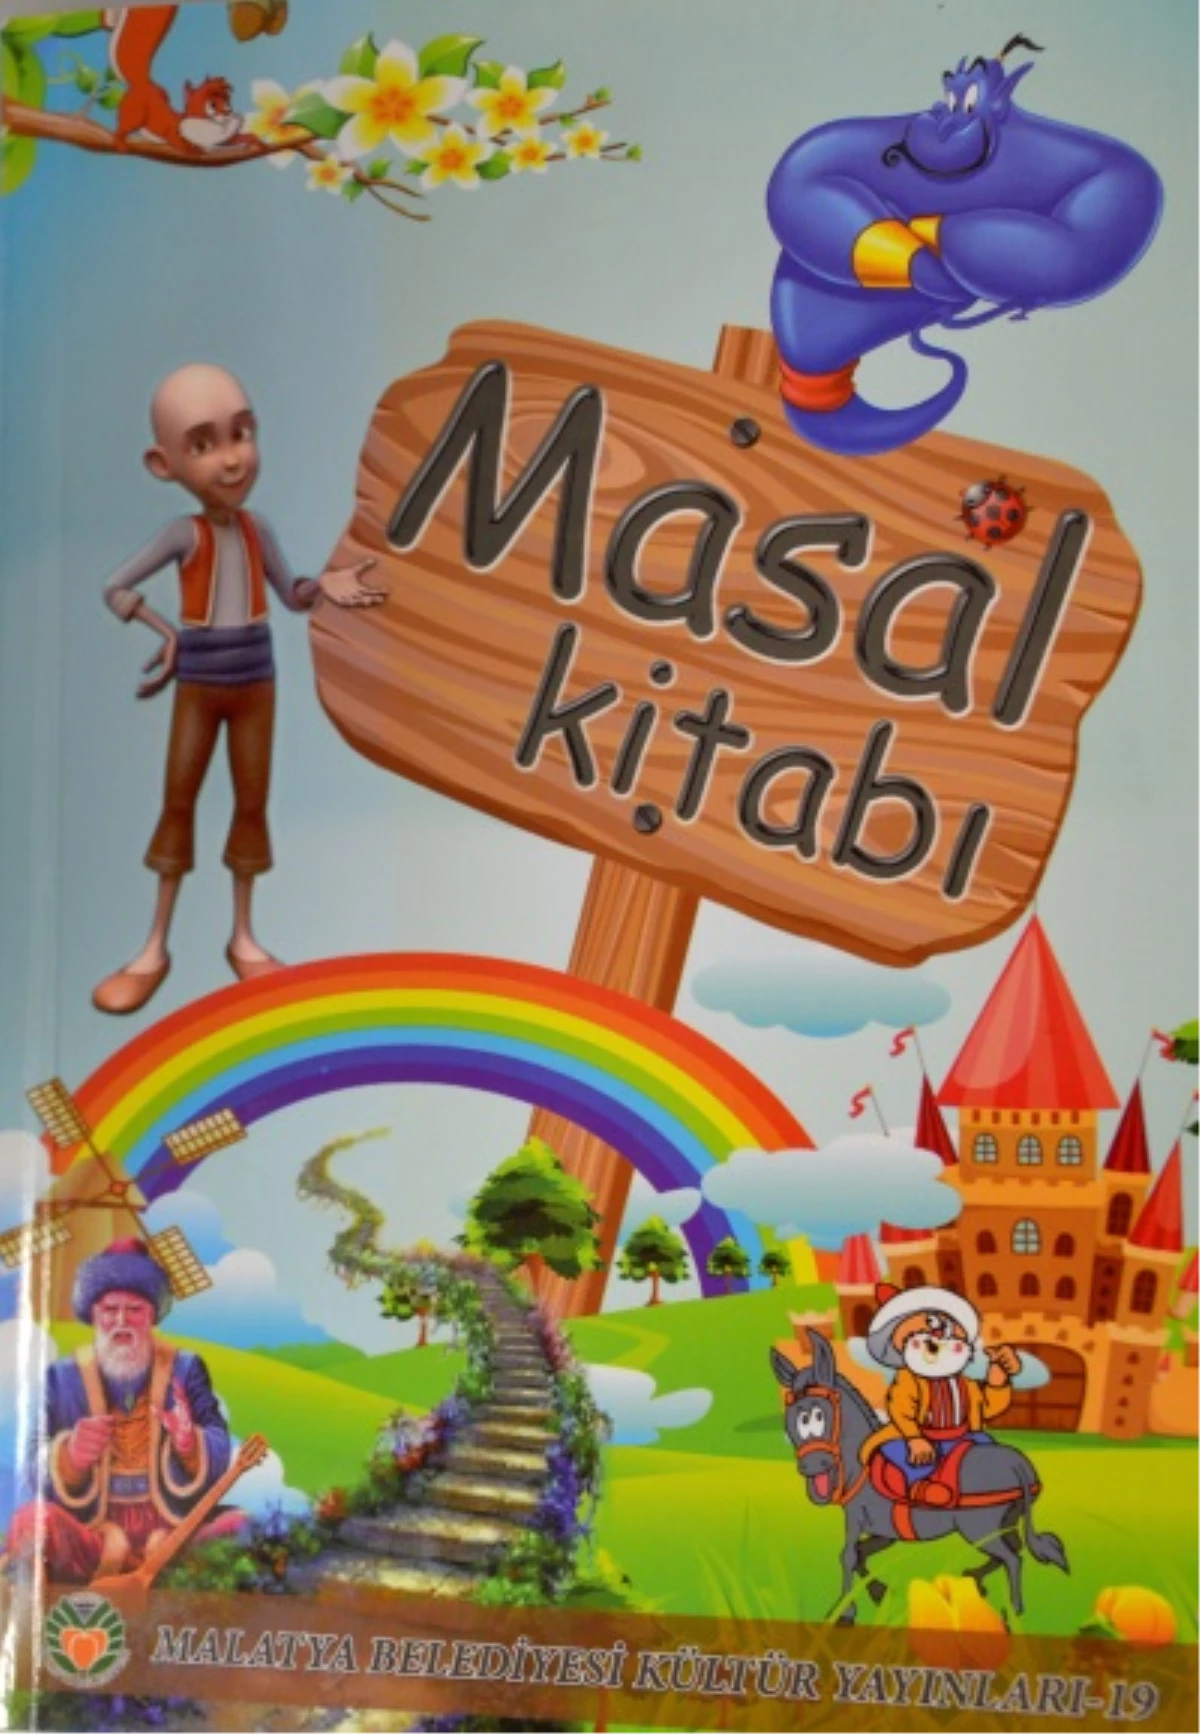 Malatya Belediyesi Kültür Yayınları Arasında "Masal Kitabı" Yayınlandı